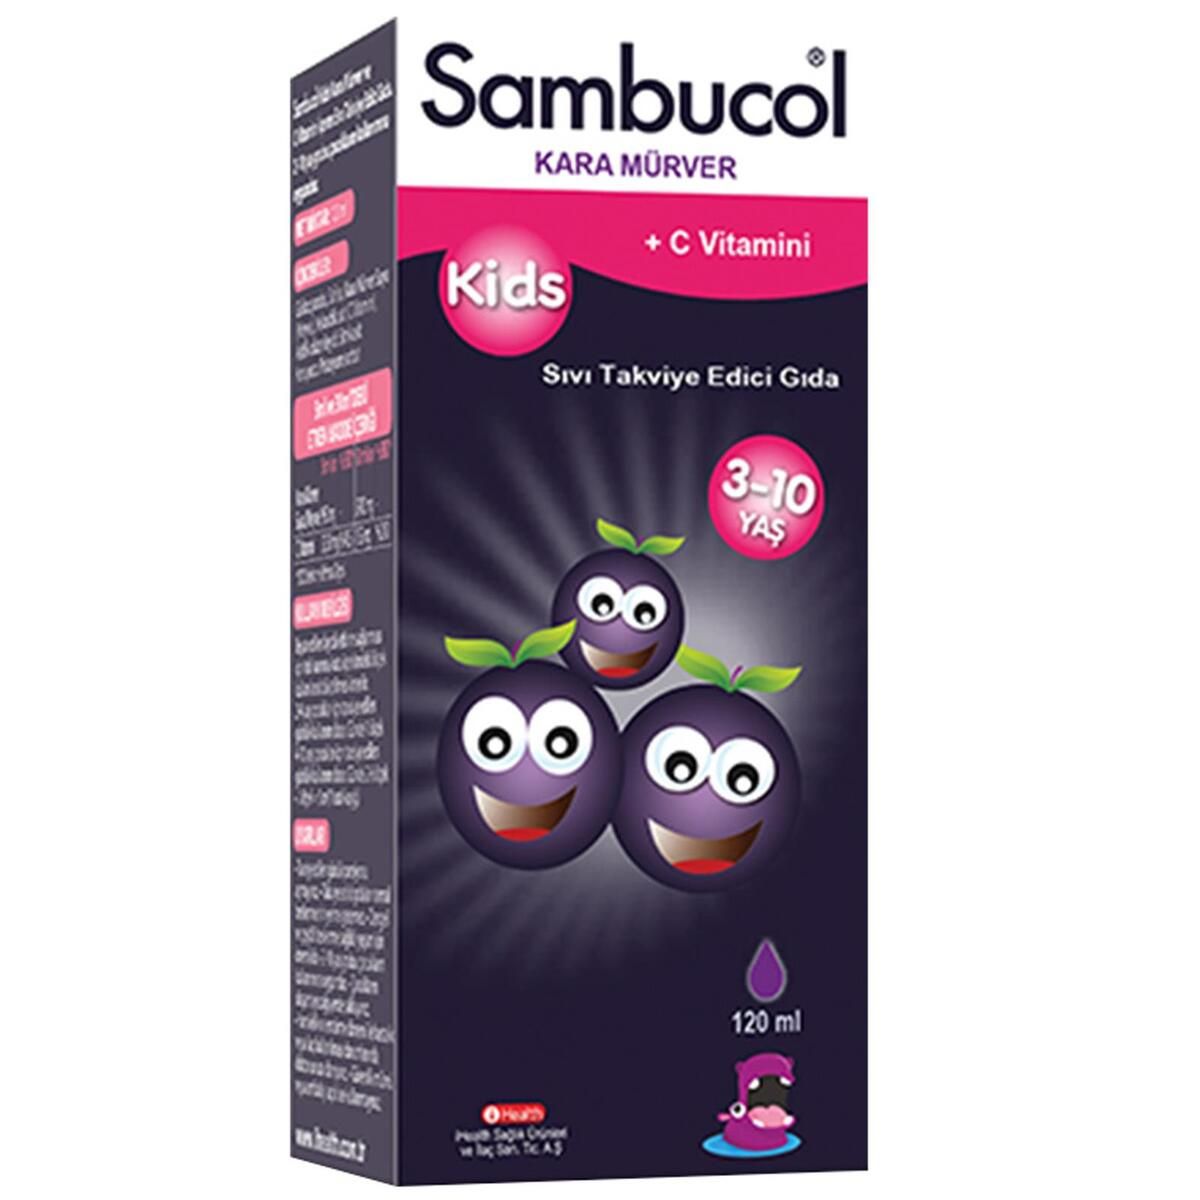 Sambucol Kids Kara Mürver Ve C Vitamini Içeren Sıvı Takviye Edici Gıda 120 ml